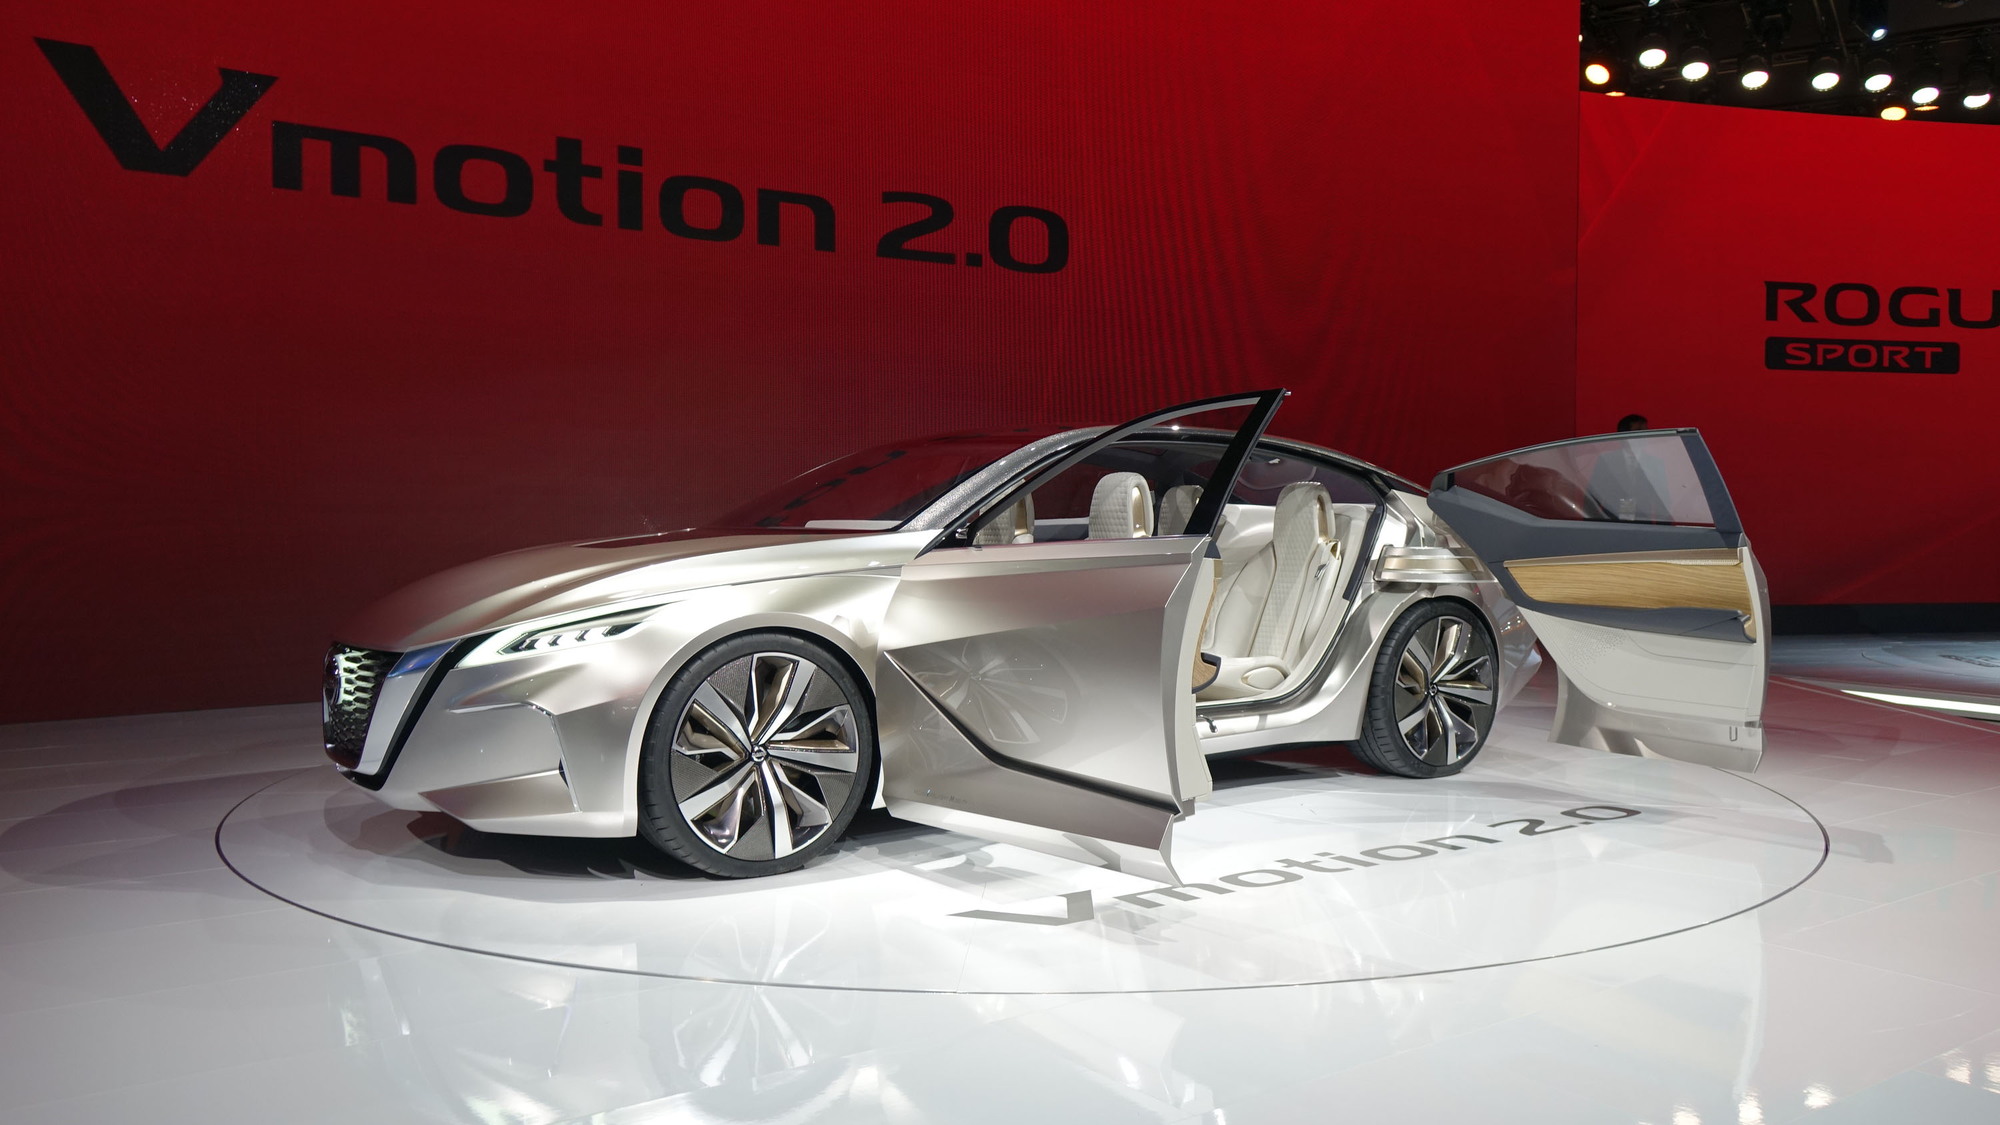 Nissan Vmotion 2.0 concept, 2017 Detroit auto show